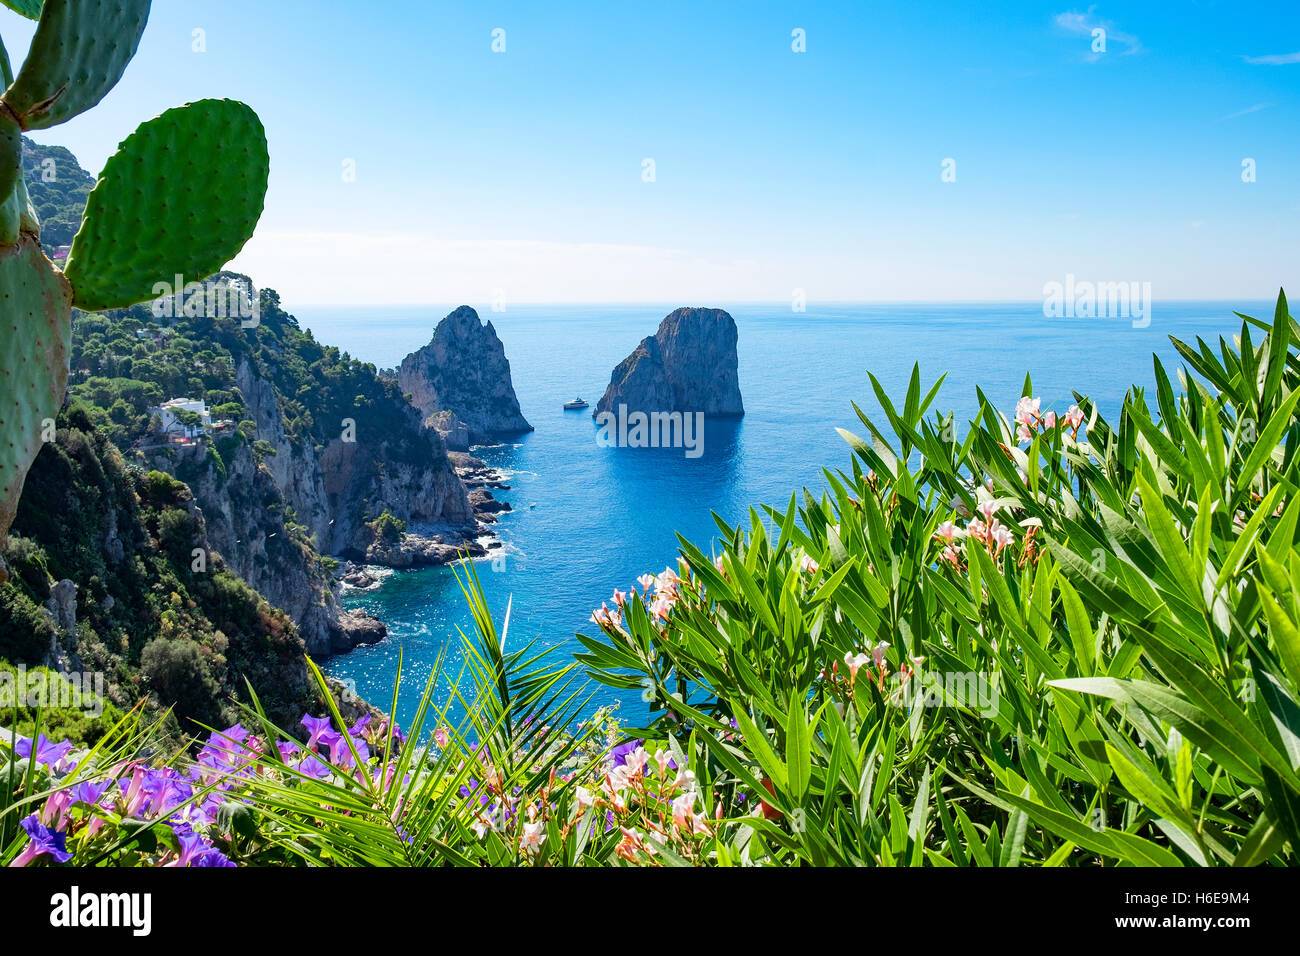 Los farallones de rocas, visto desde los jardines de Augusto, en la isla de Capri, Italia. Foto de stock